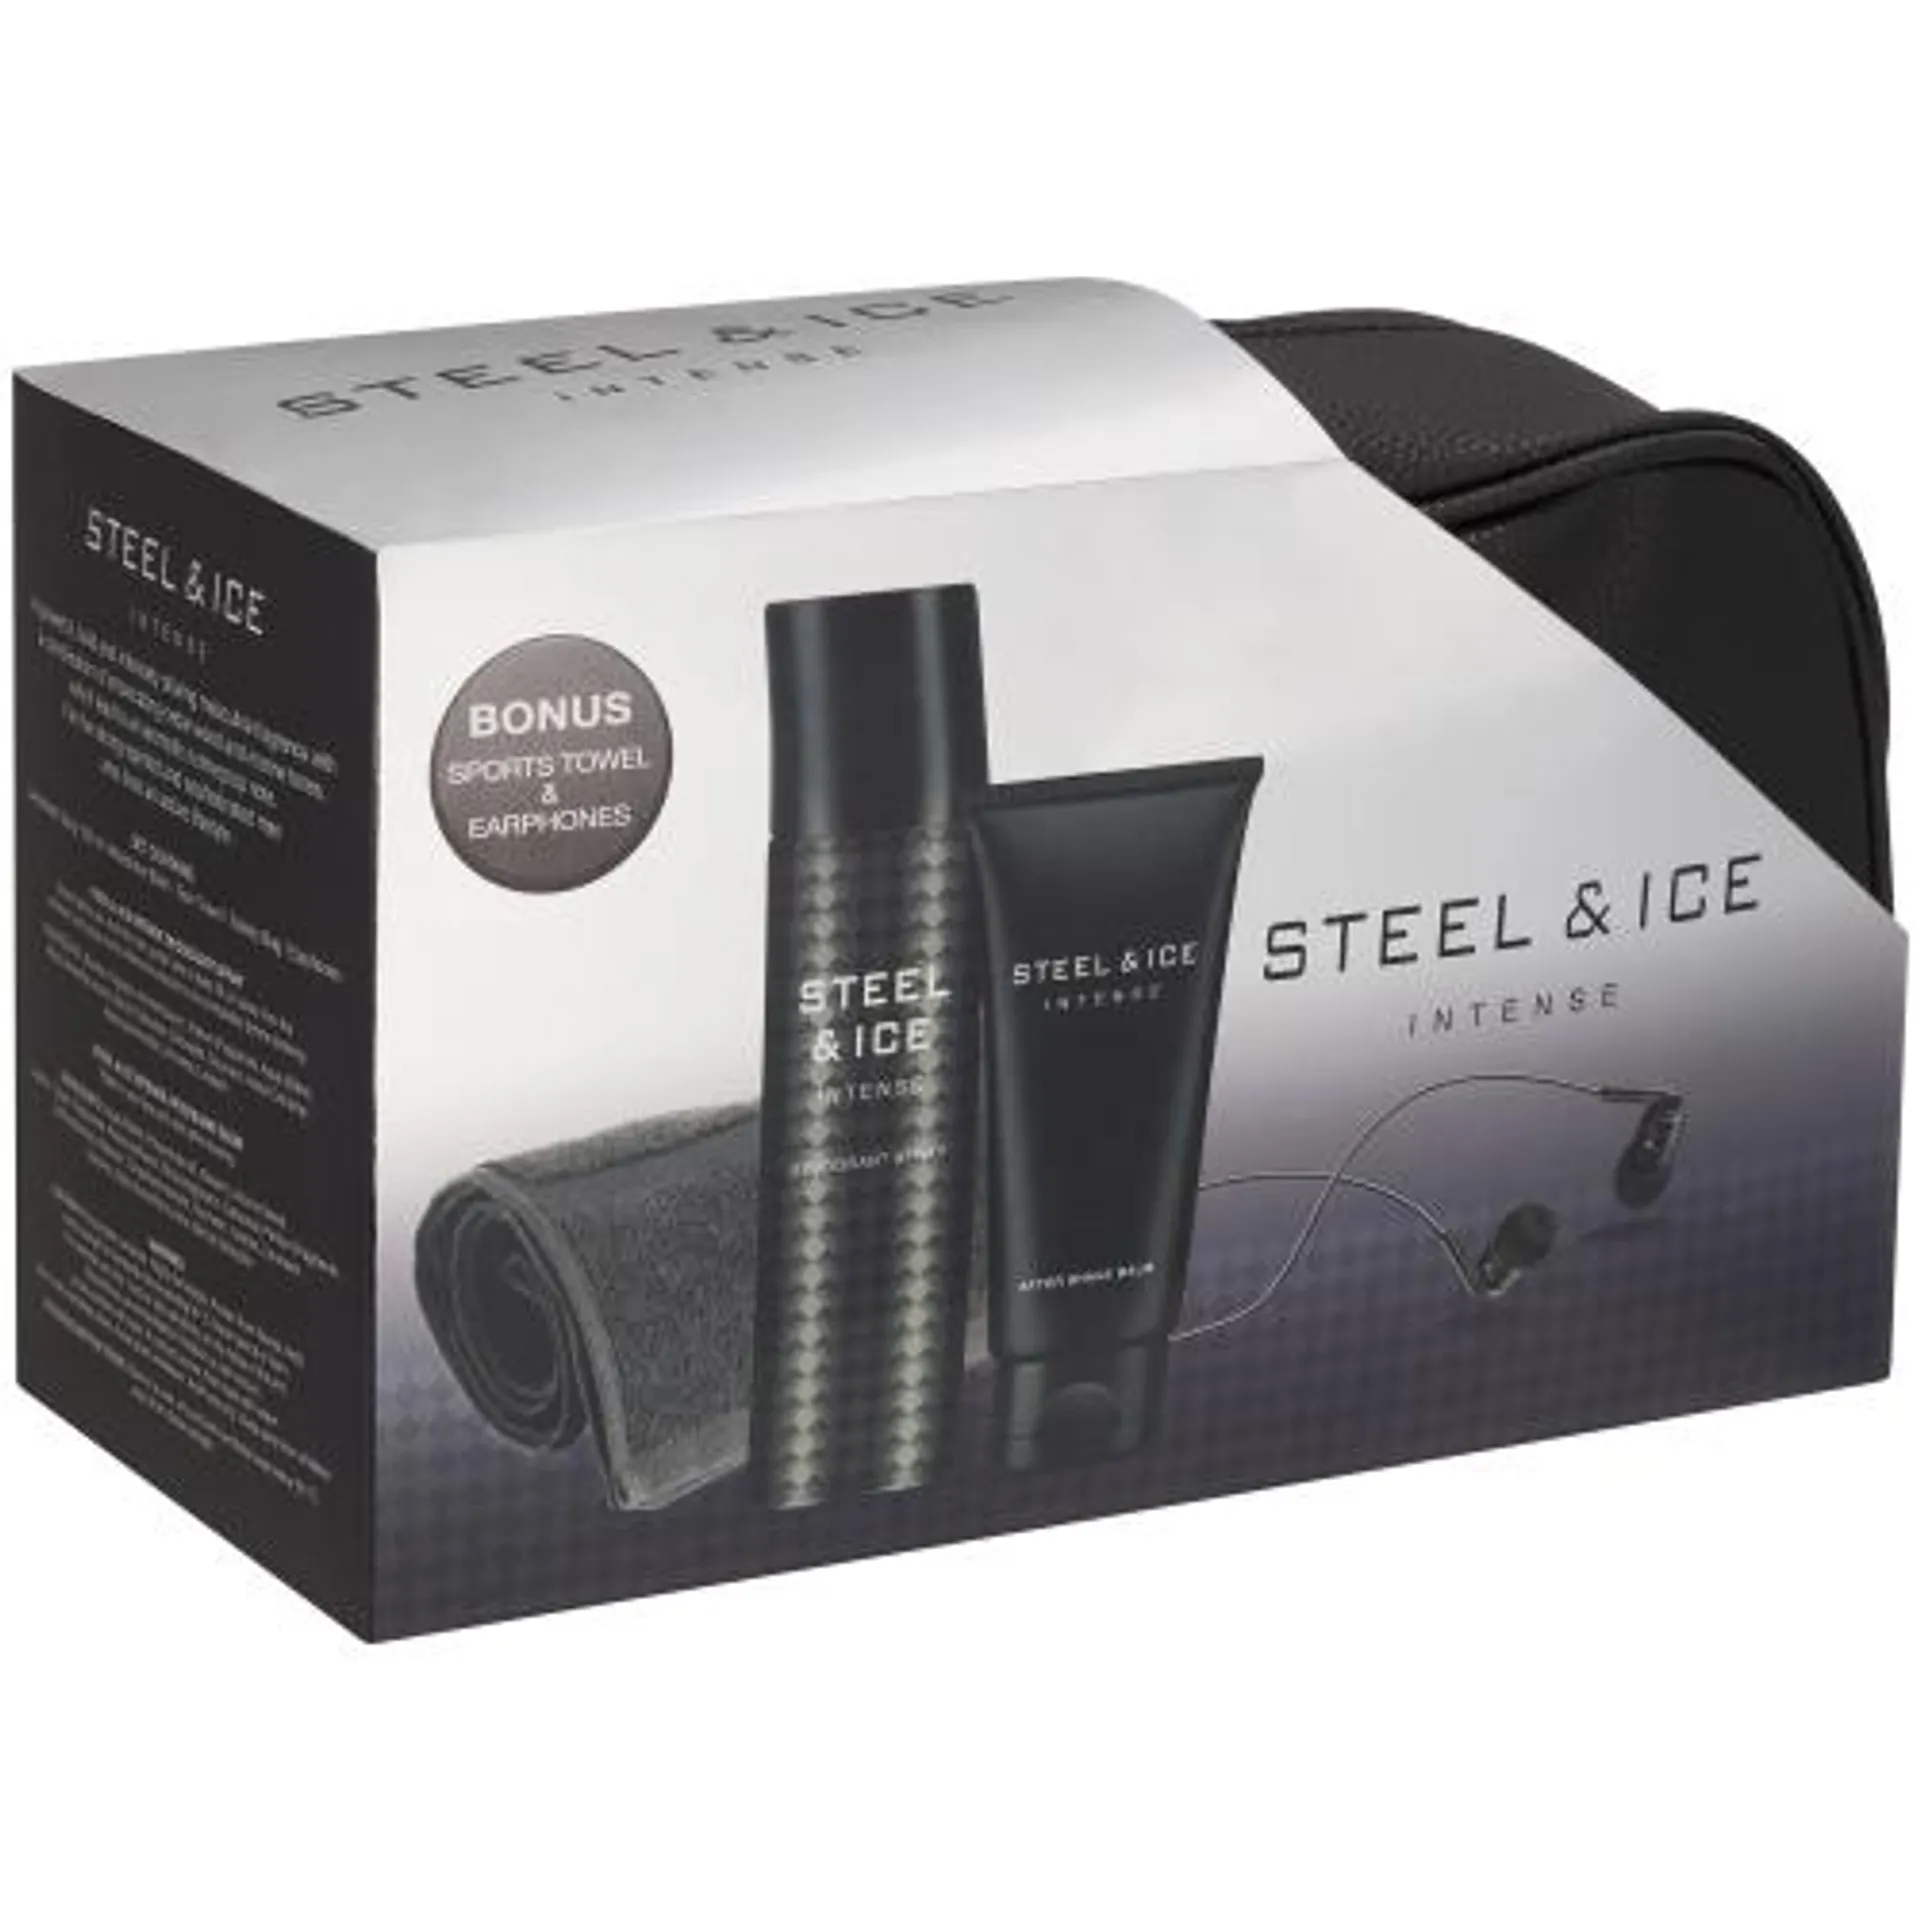 Steel & Ice Gift Bag Set